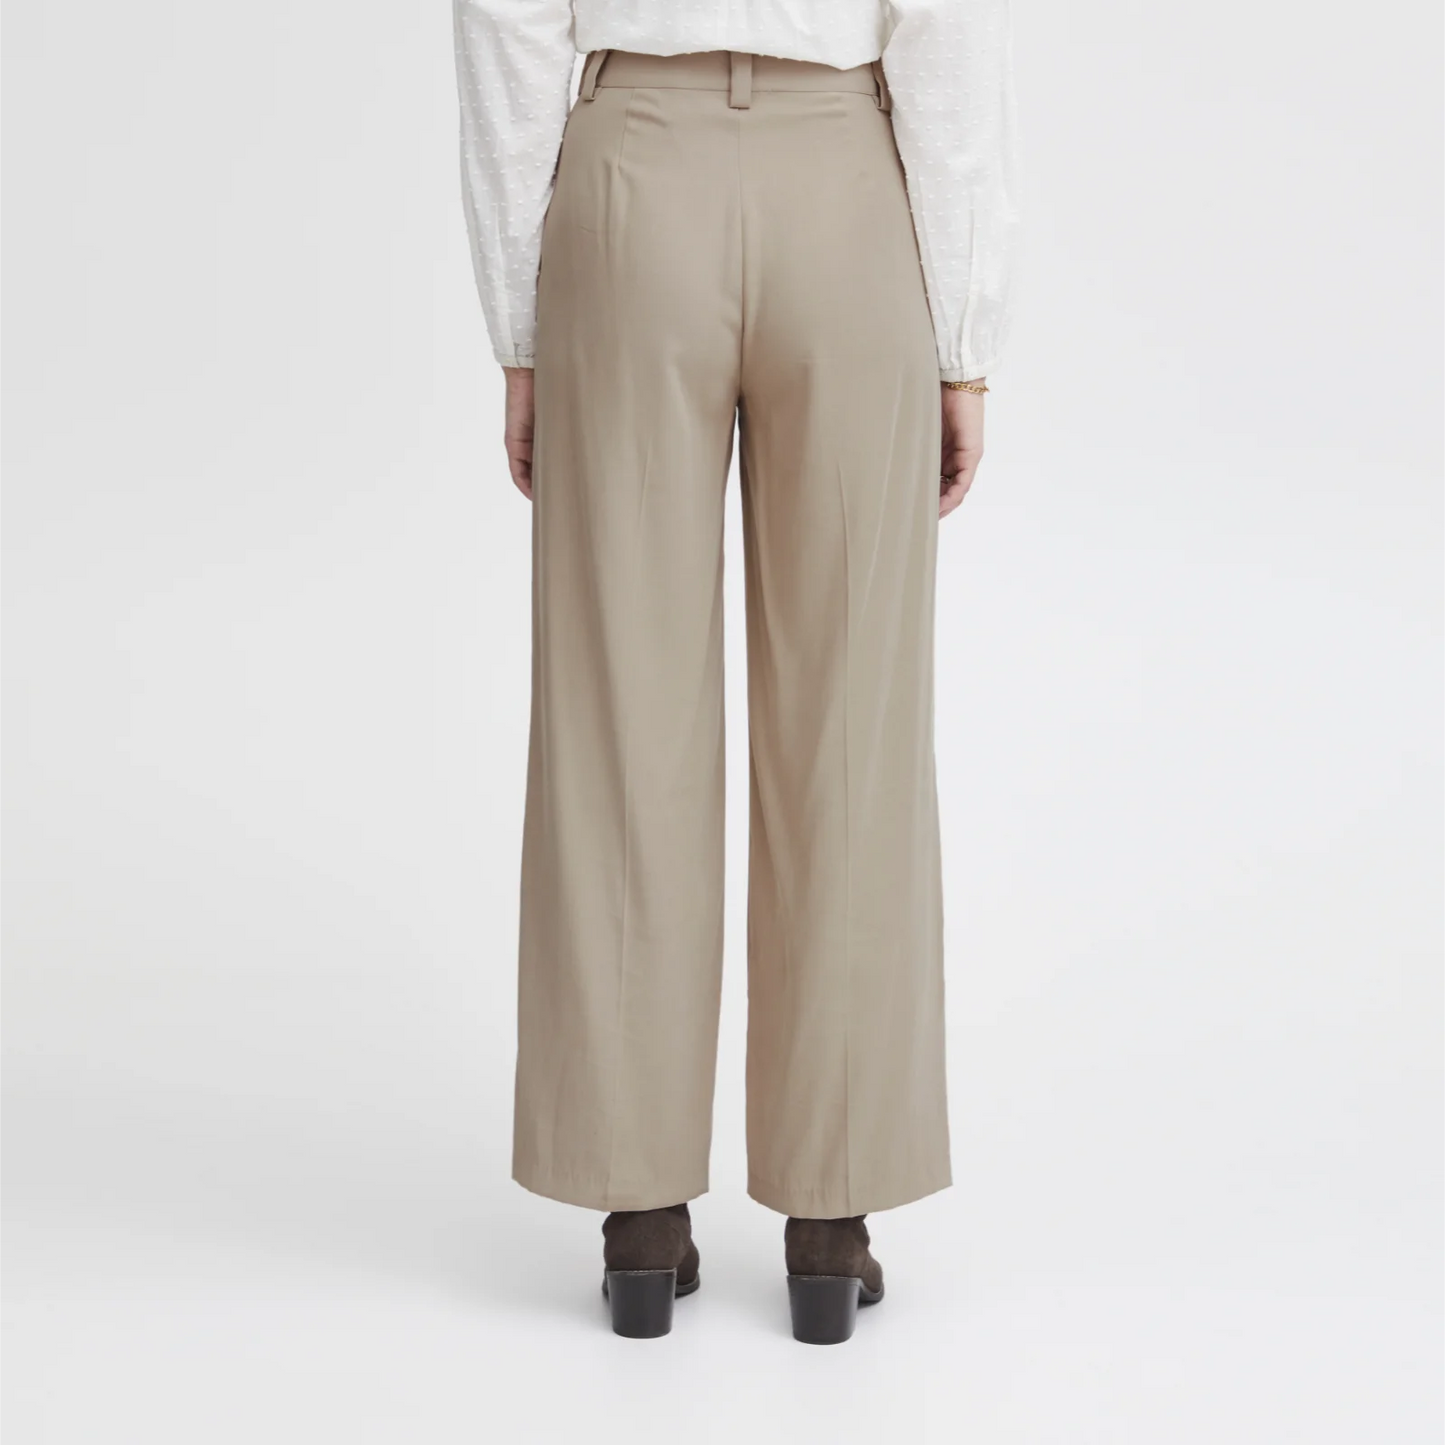 Irleono bukser fra Atelier Reve i Cobblestone (model bag)